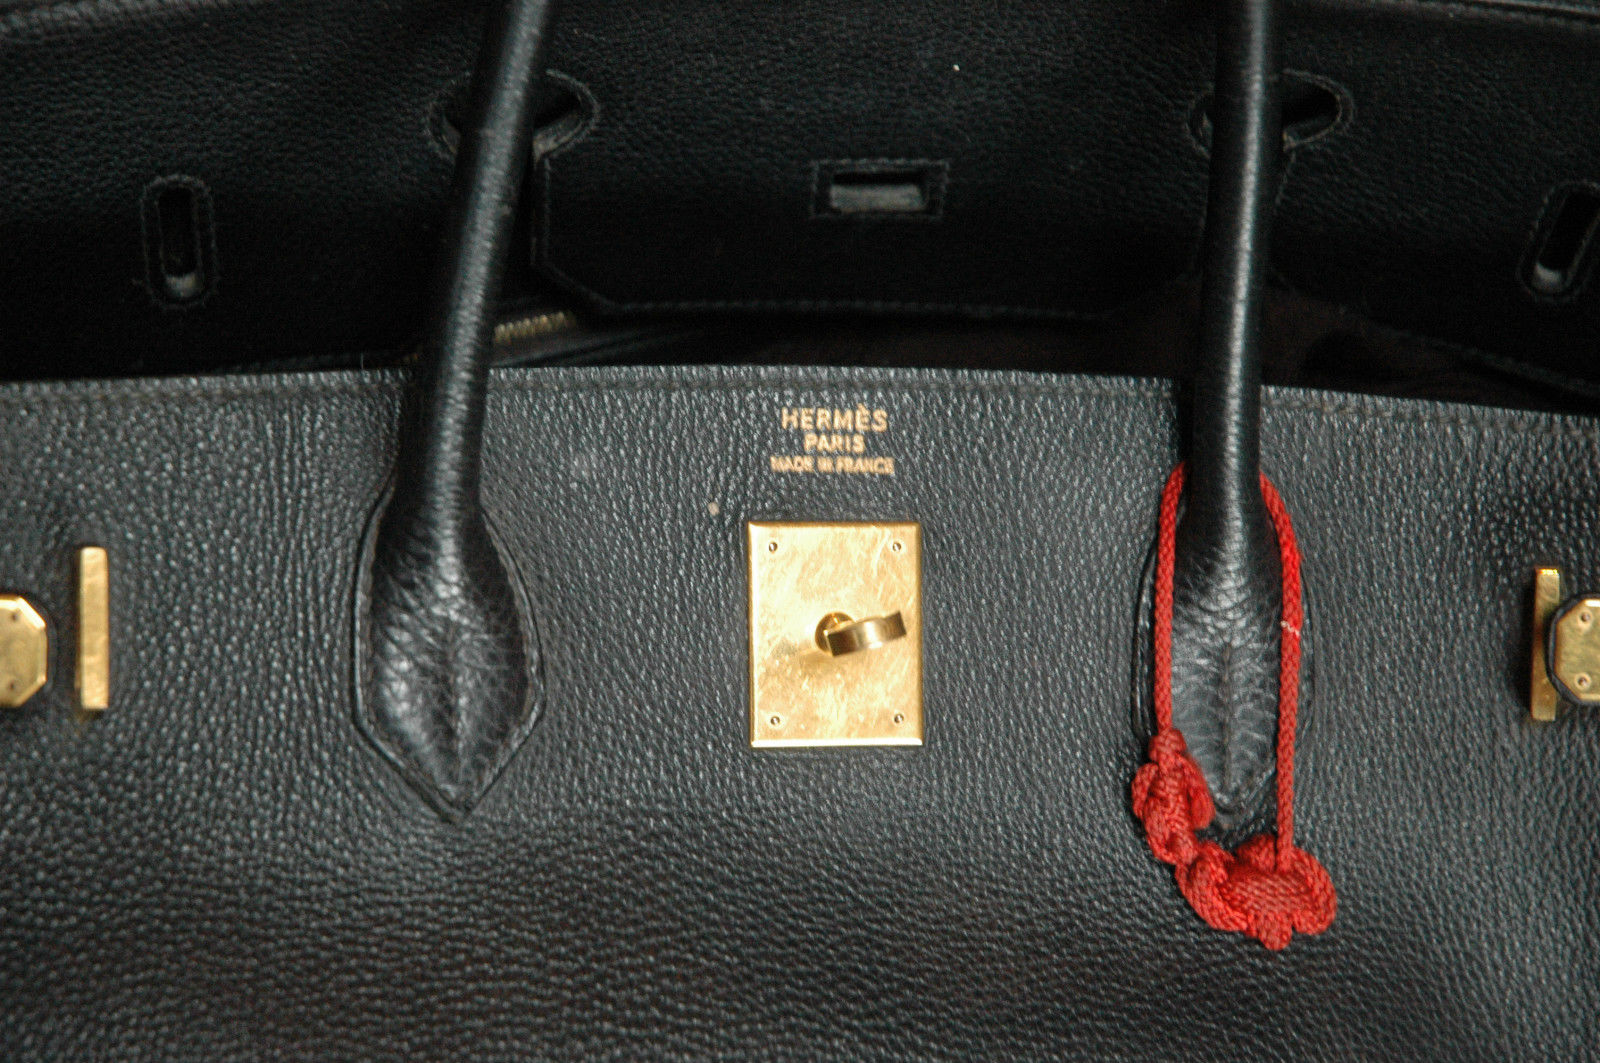 珍柏金(Jane Birkin)喜歡在她的包包上貼上貼紙或繫上綁帶做裝飾，此次拍賣的柏金包還附有她用來裝飾的紅繩。